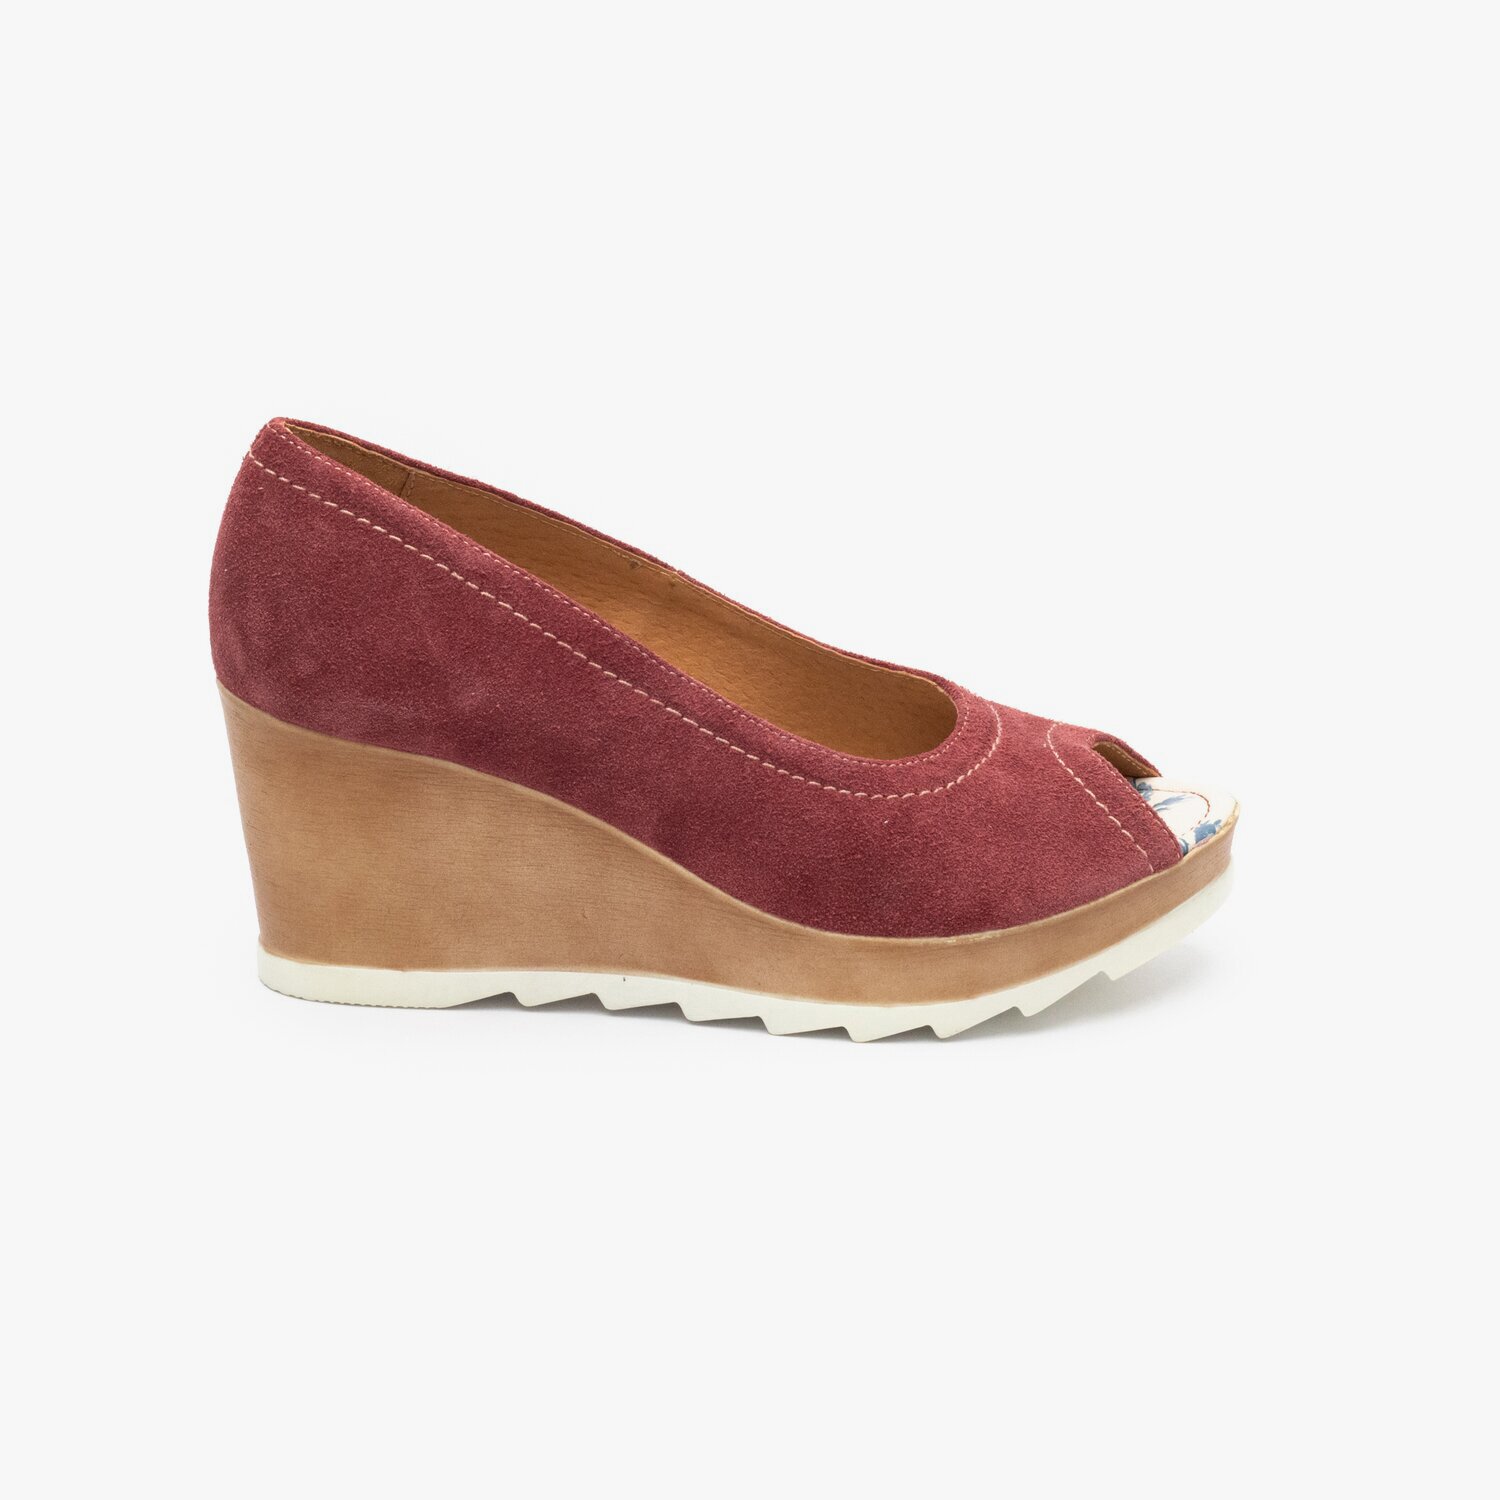 Pantofi dama casual cu platforma din piele naturala- 531-1 Rosu Velur